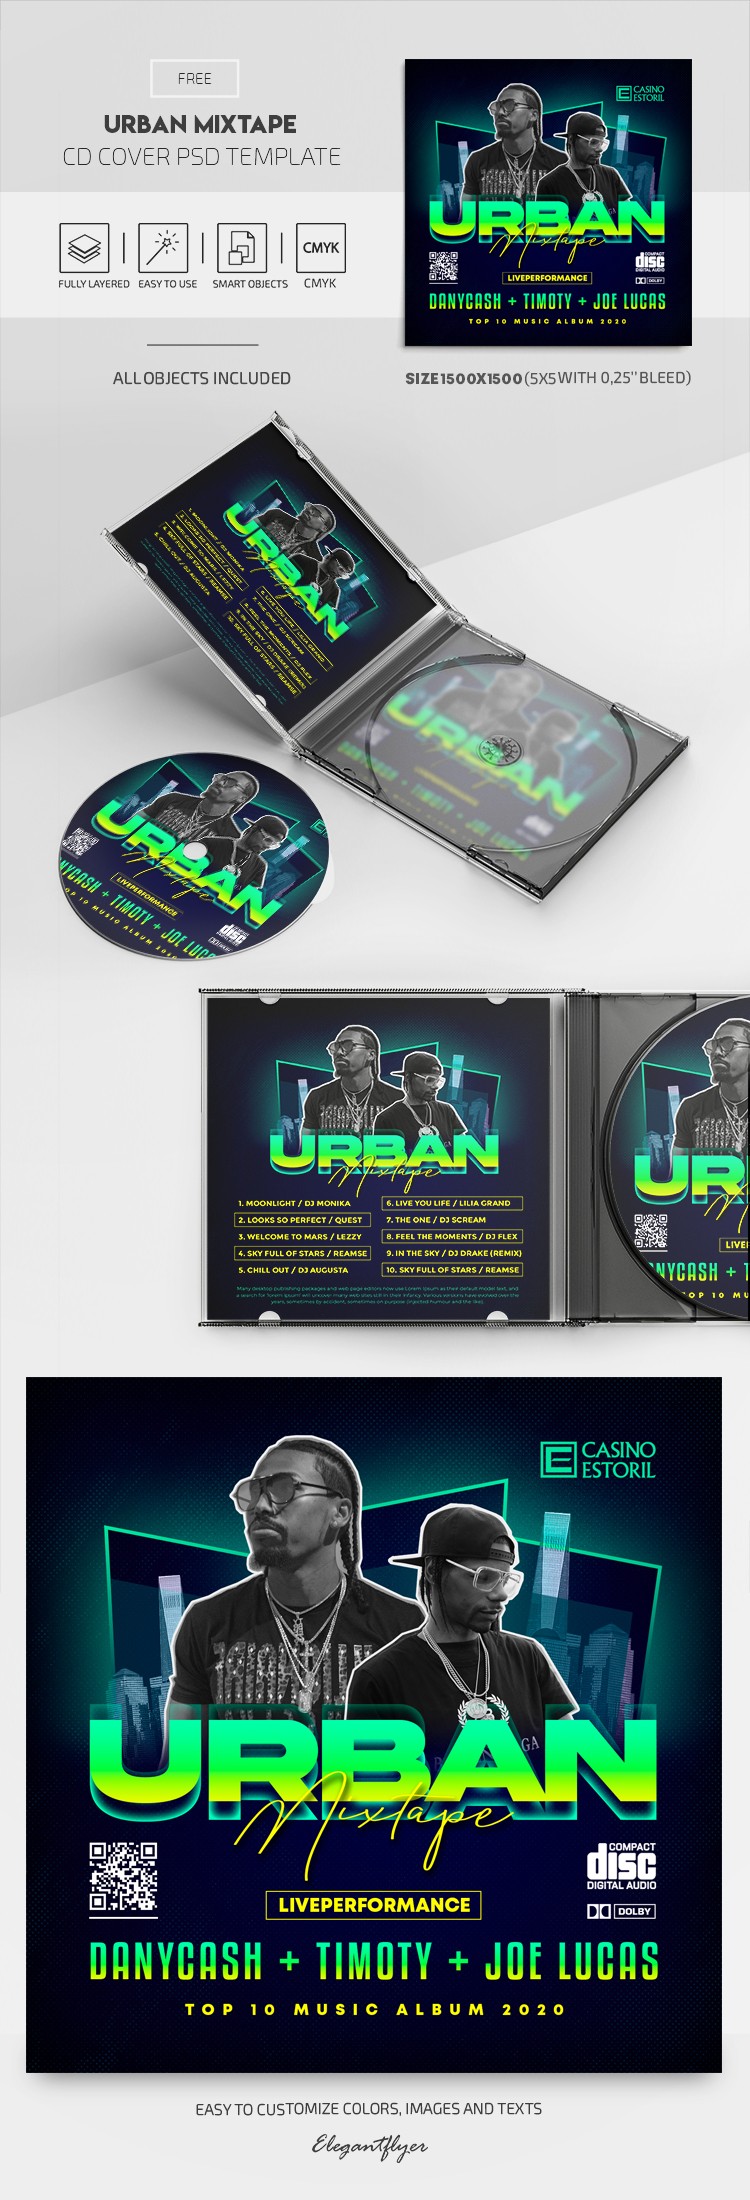 Portada de la mezcla urbana del CD by ElegantFlyer